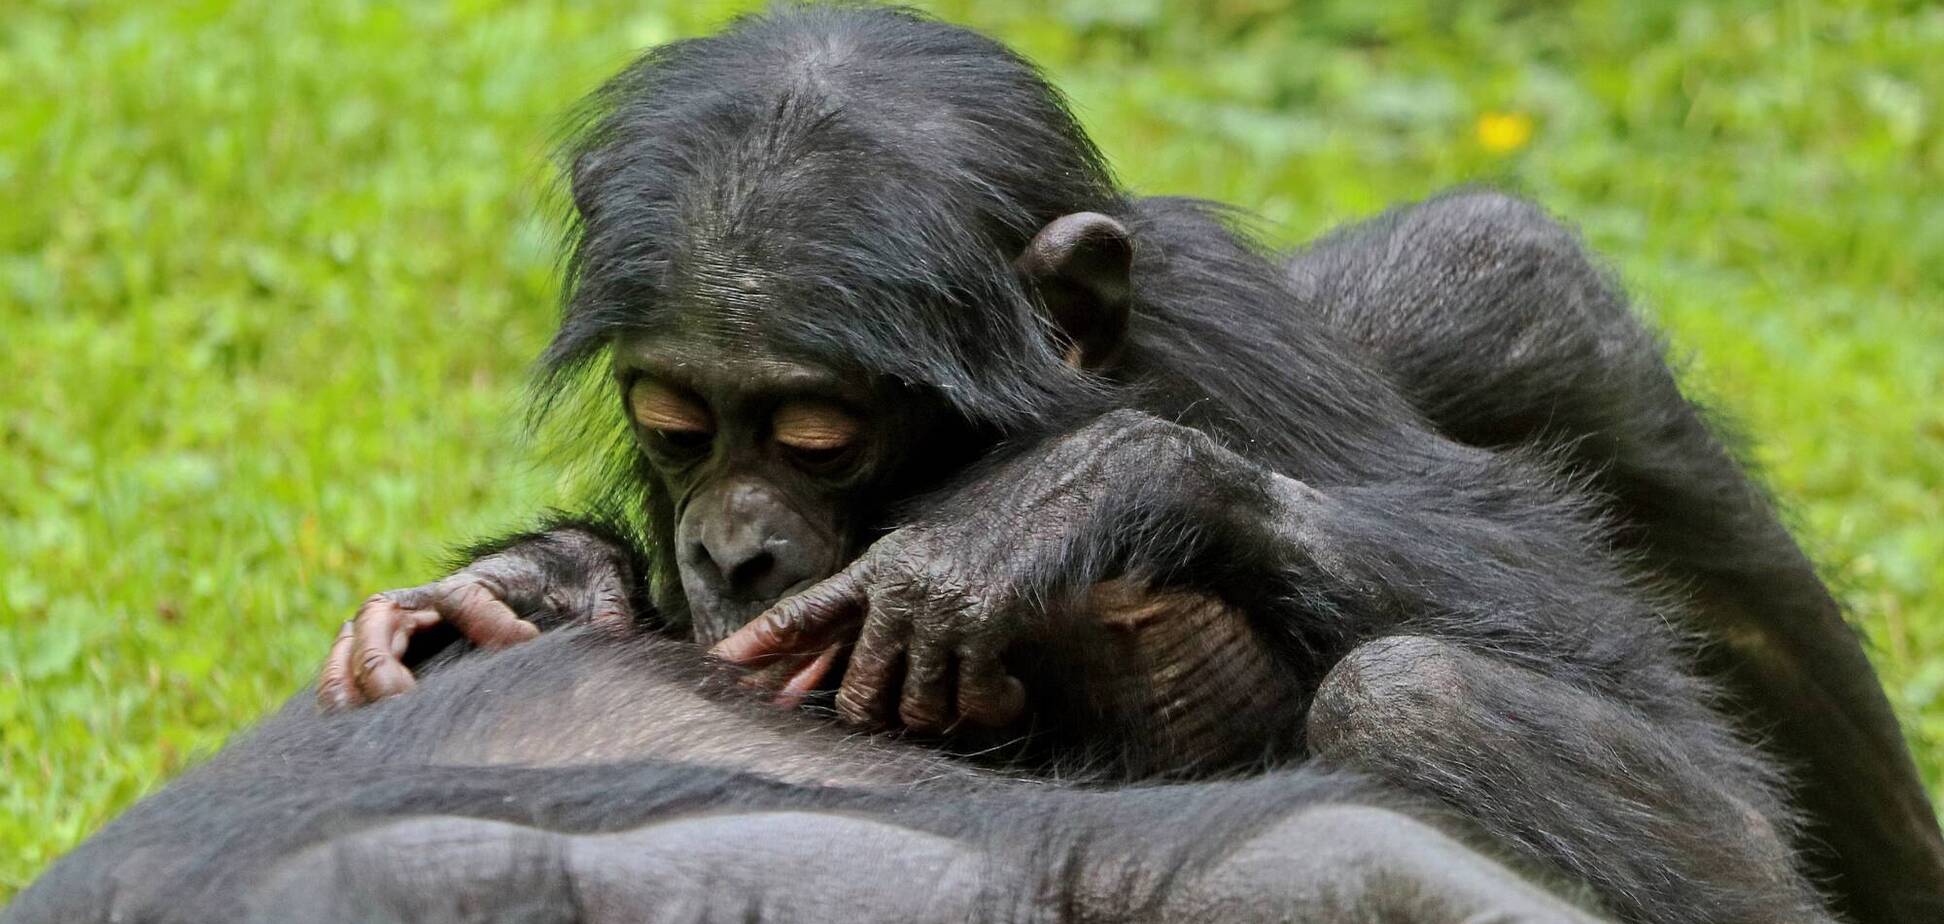 Исследователи изучили поведение обезьян бонобо, которые поддерживают уникальную иерархию и очень мирный режим в своем обществе